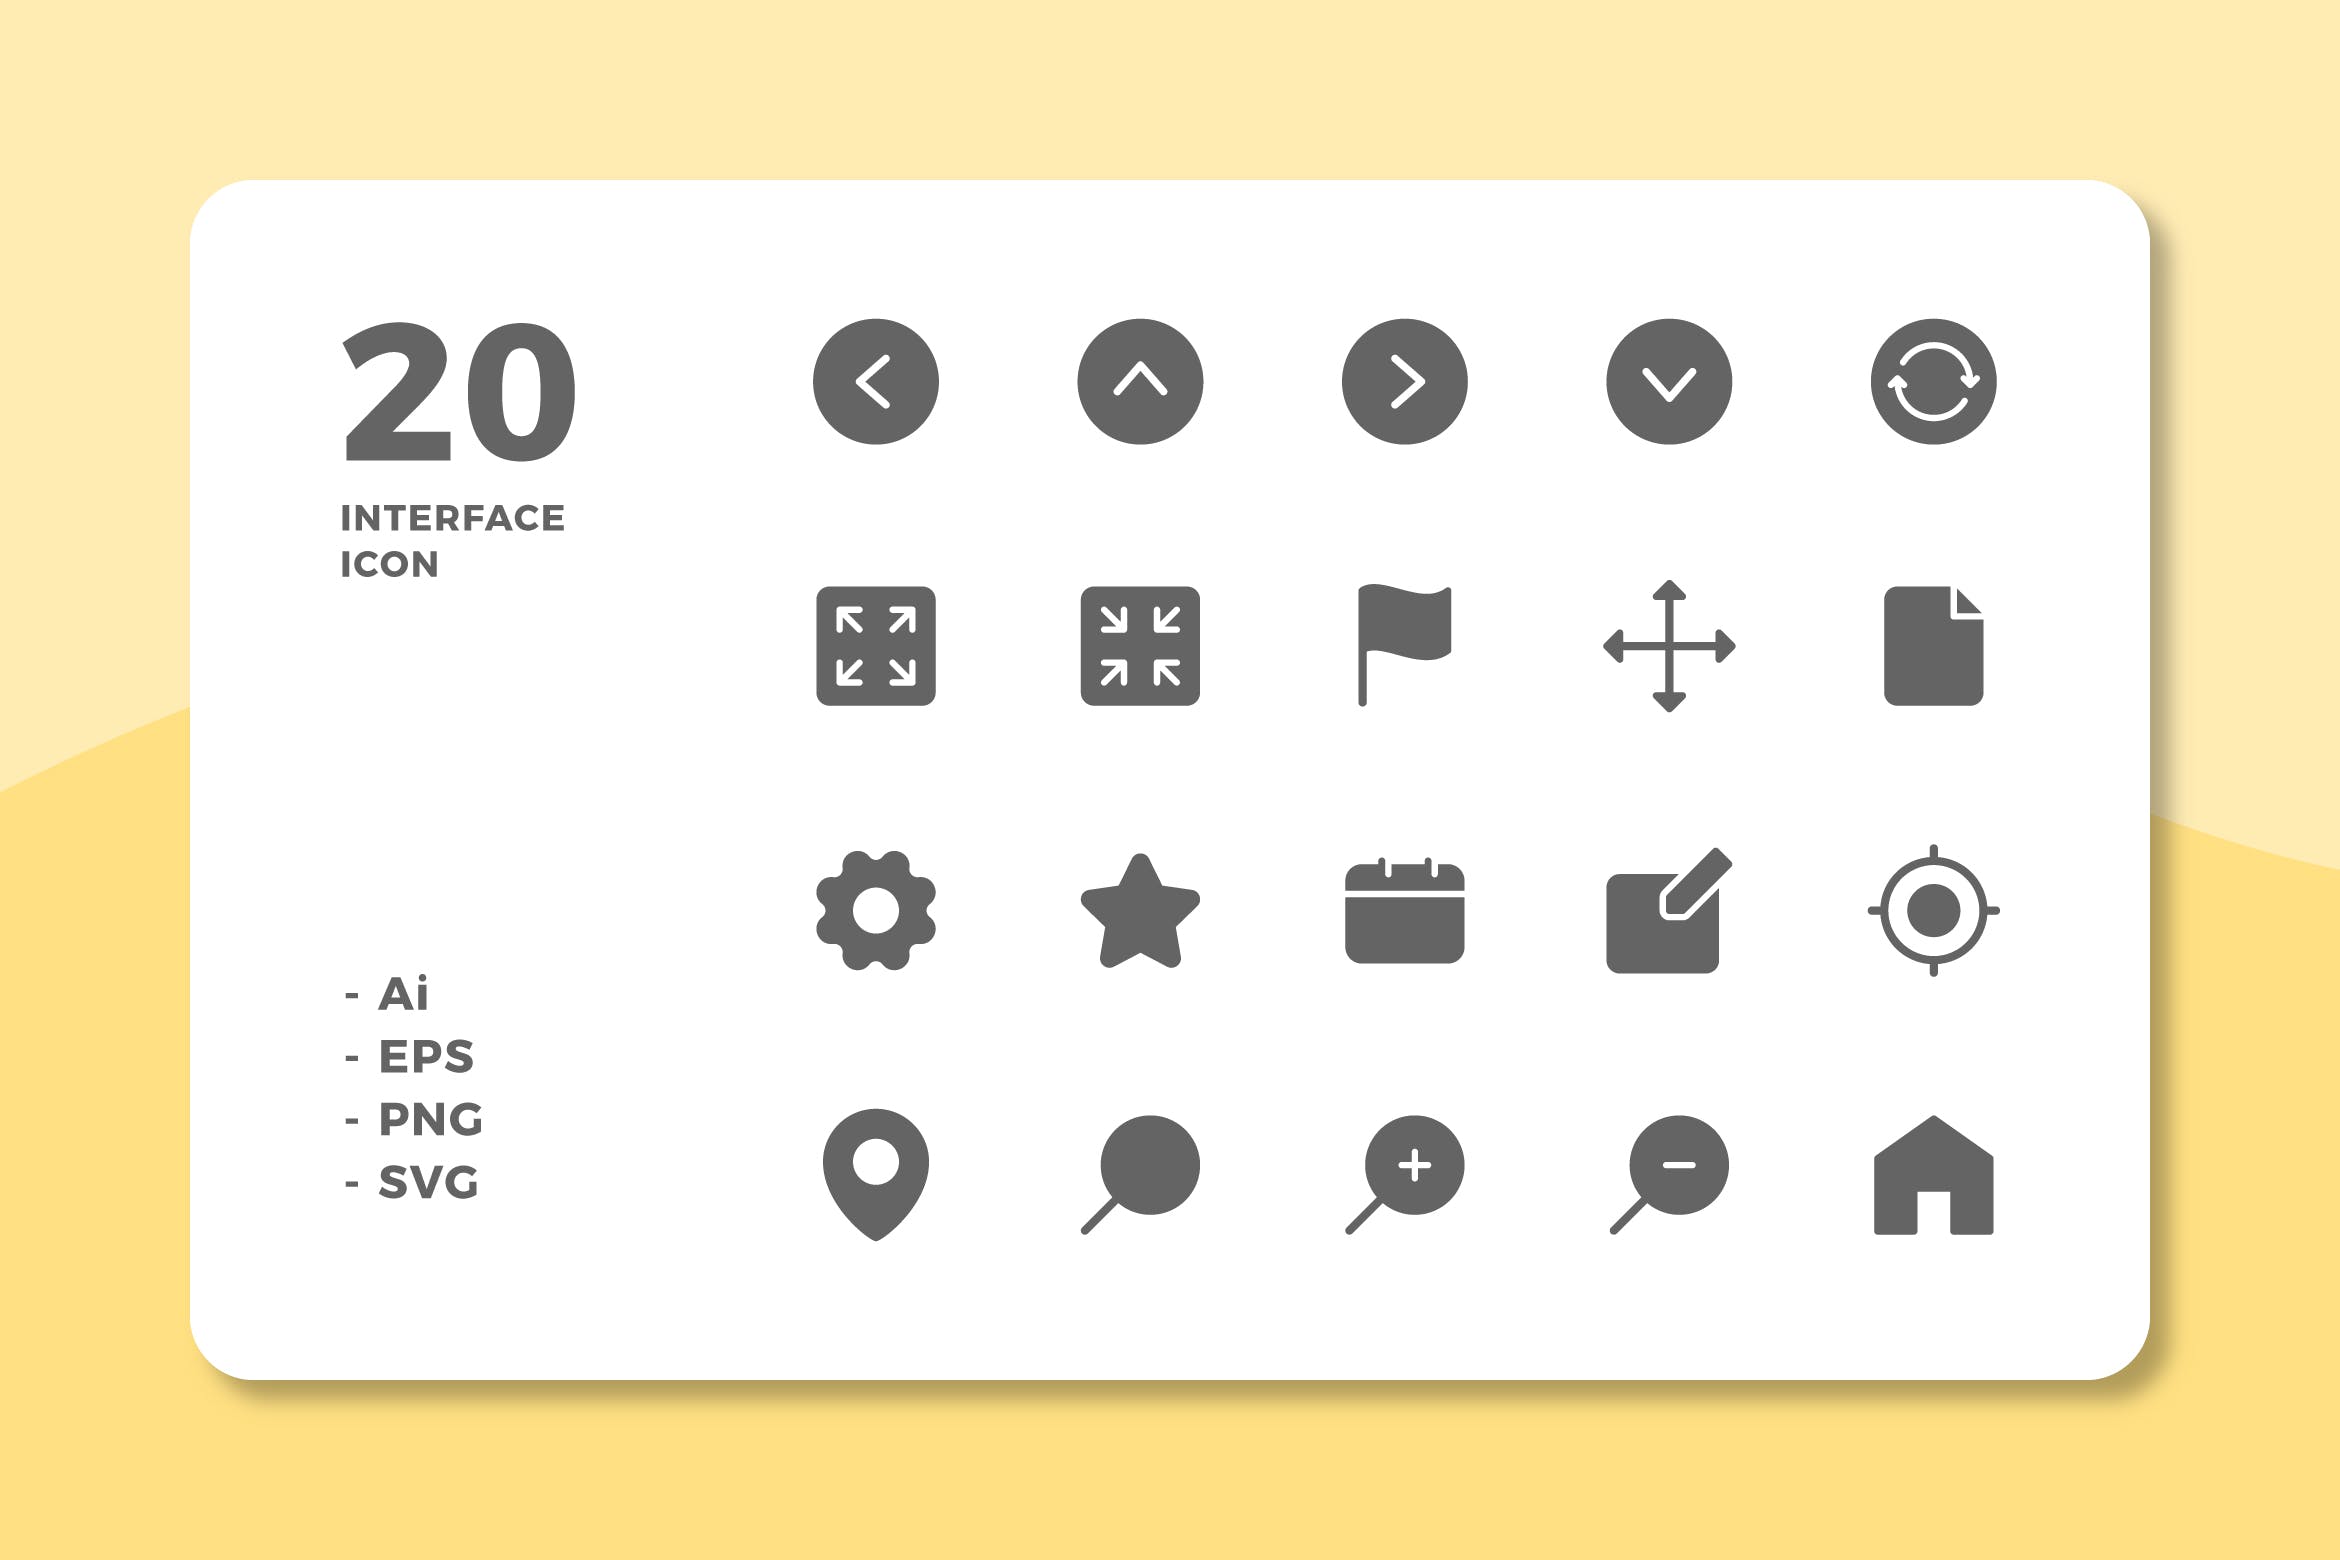 20枚UI界面设计APP操作选项素材库精选图标v1 20 Interface Icons Vol.1 (Solid)插图